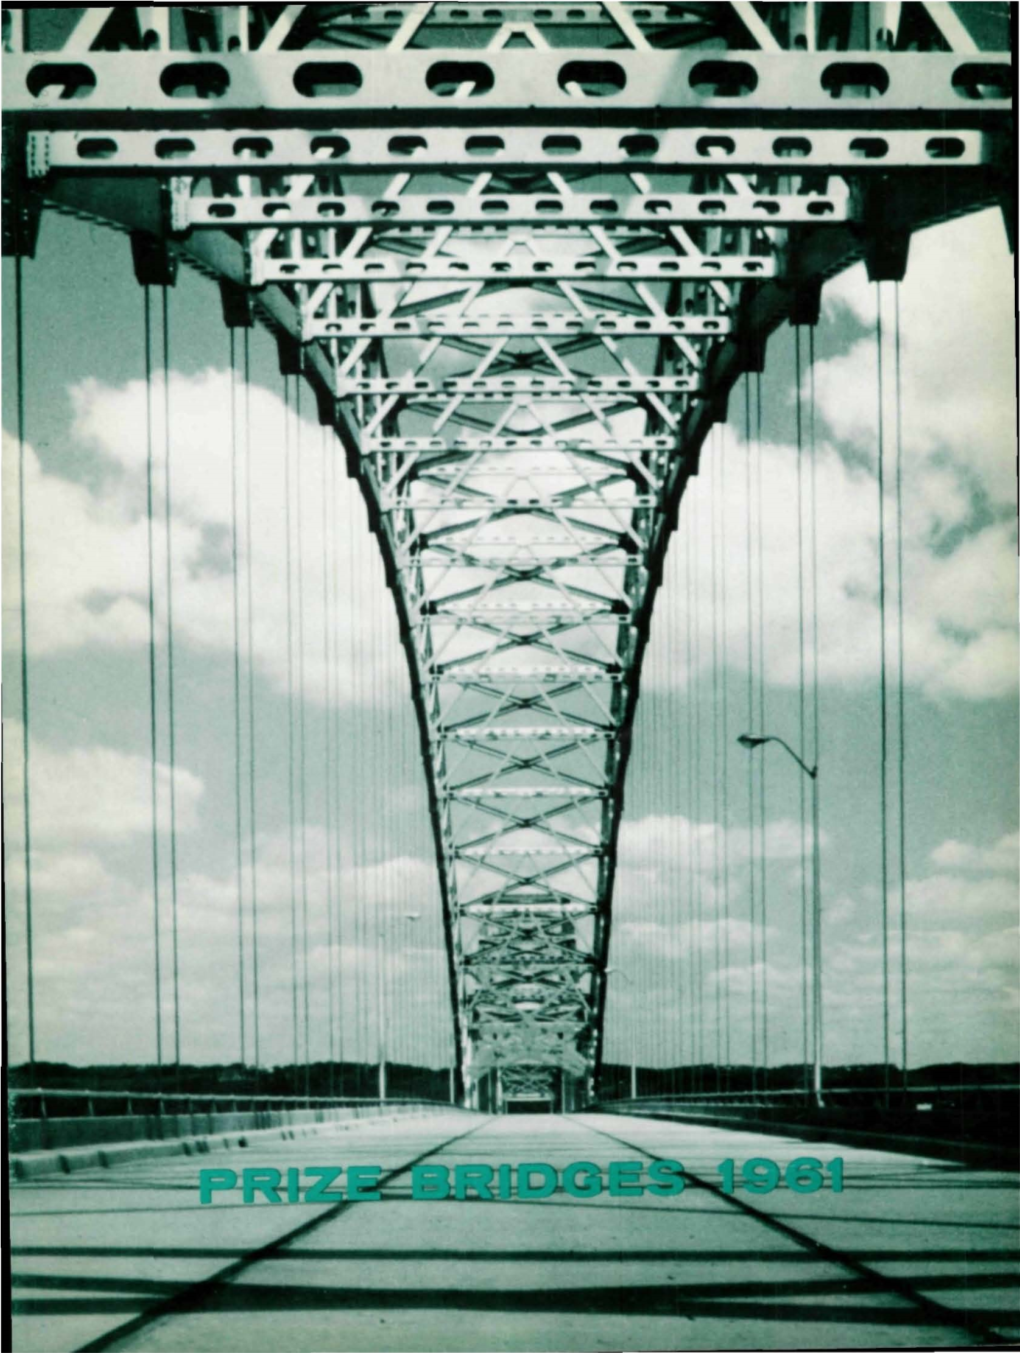 Sherman Minton Bridge